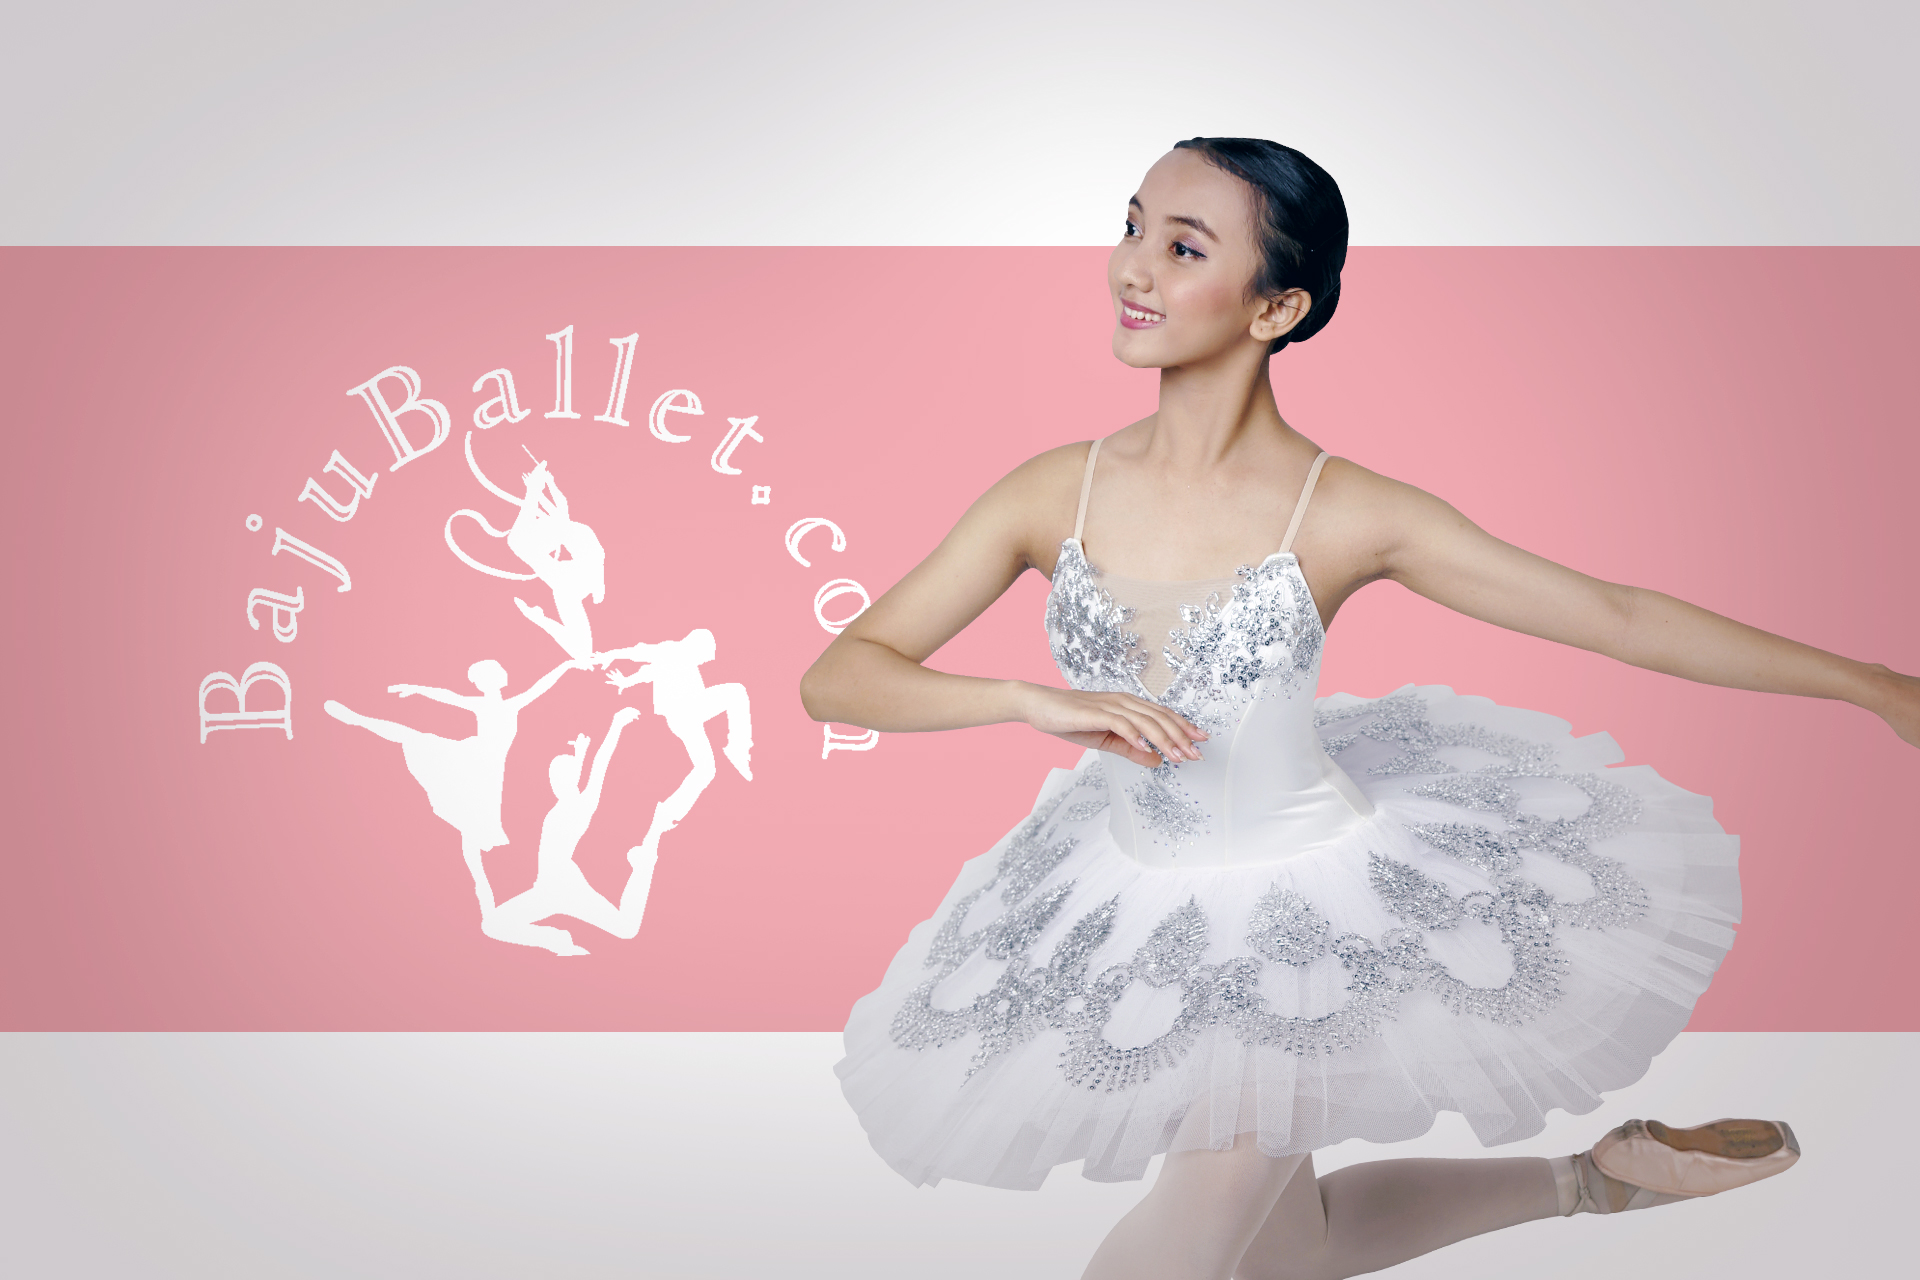 baju-ballet-banner